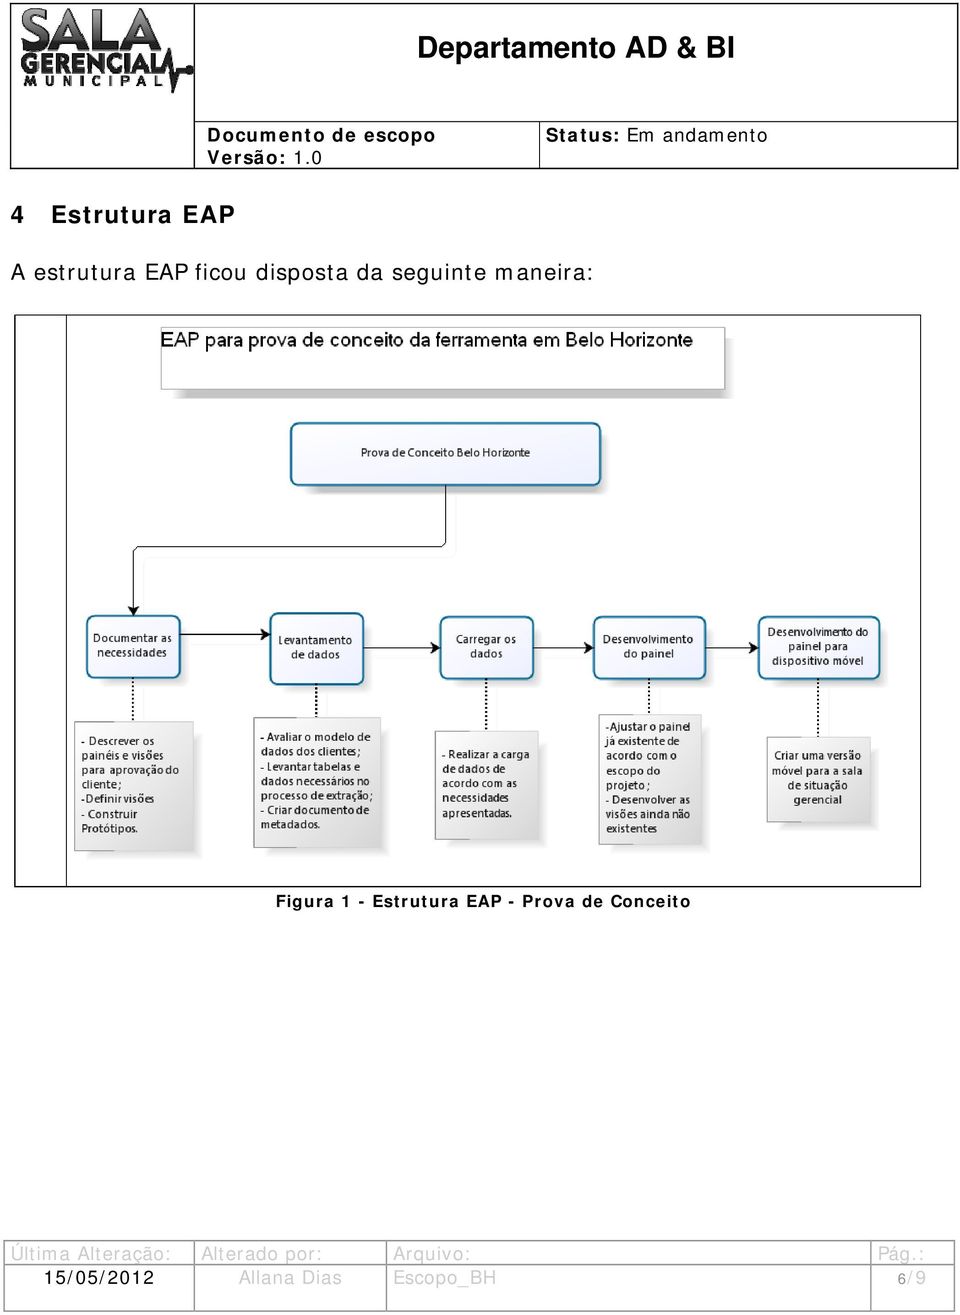 1 - Estrutura EAP - Prova de Conceito